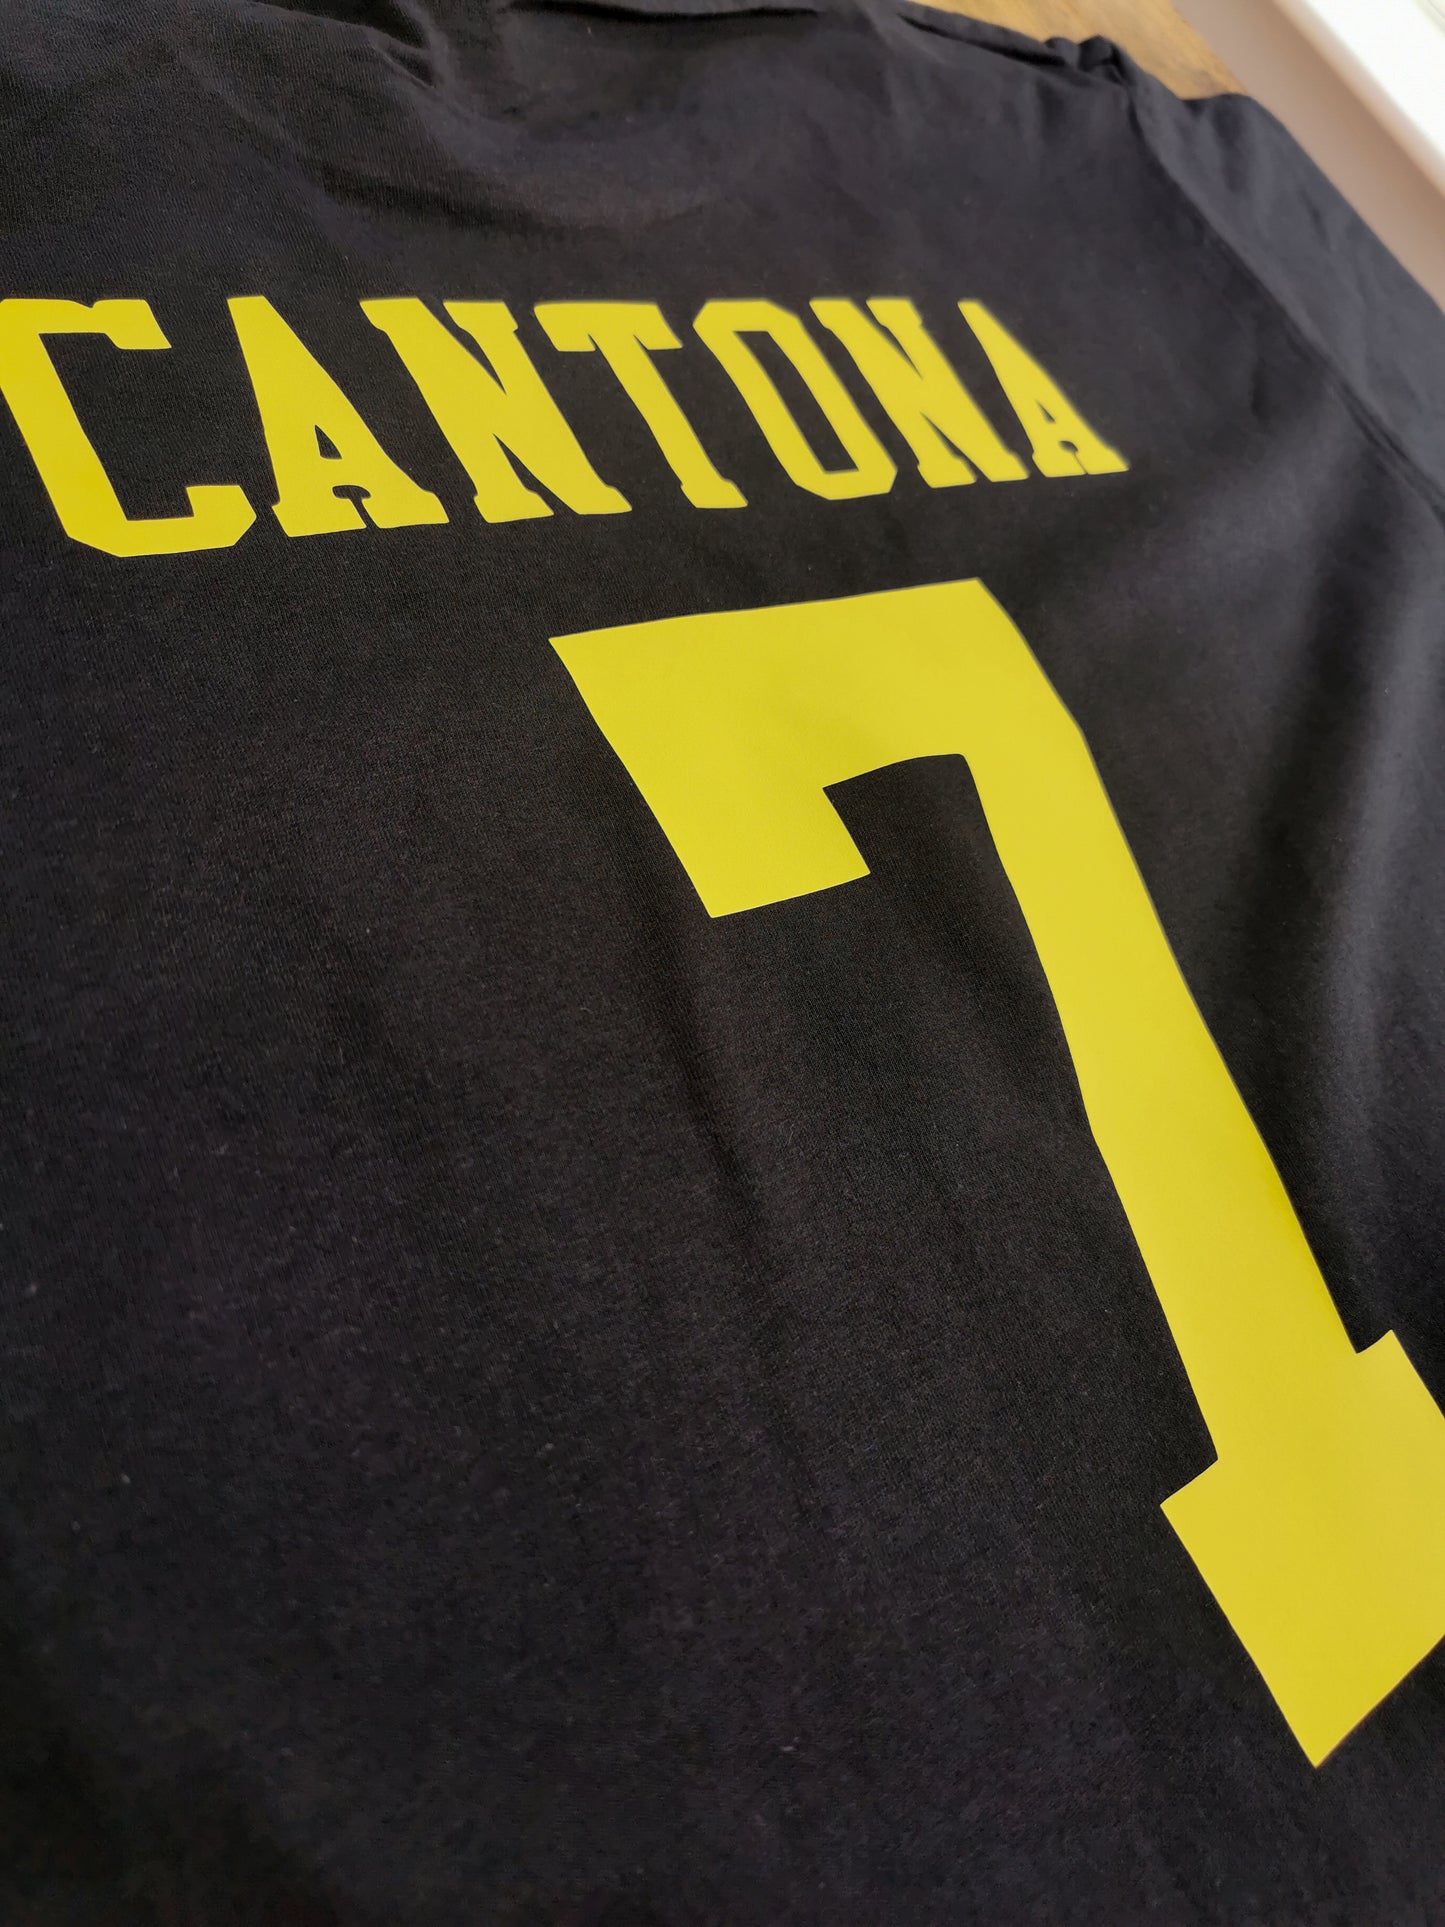 Cantona 7 with kung fu Hooligan kick print - back and front printed T-Shirt. Mens